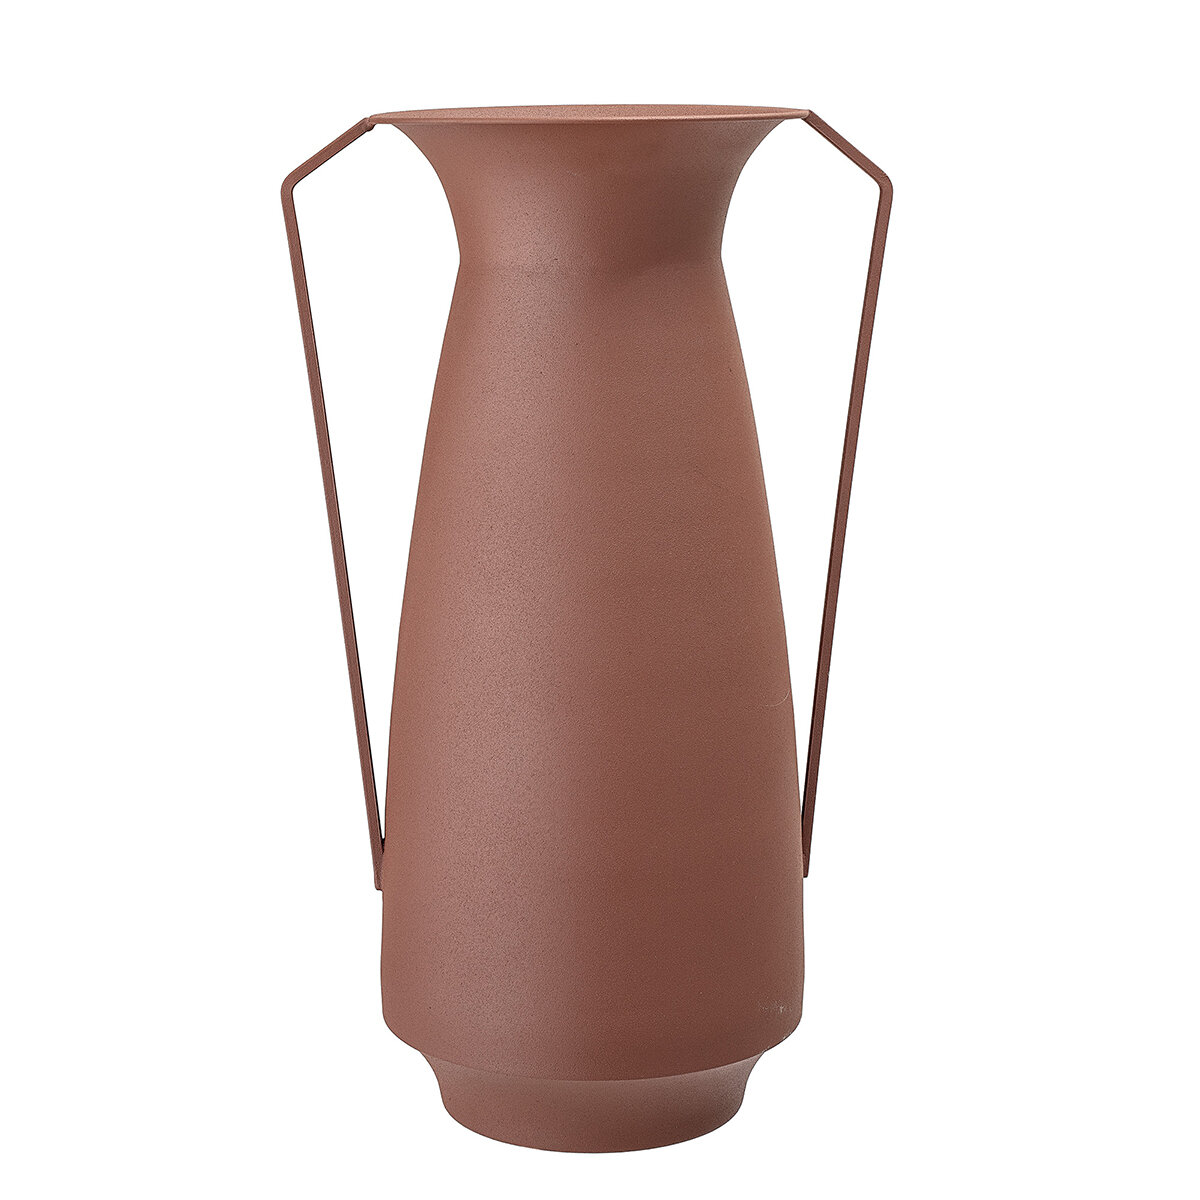 Agata - Metal vase